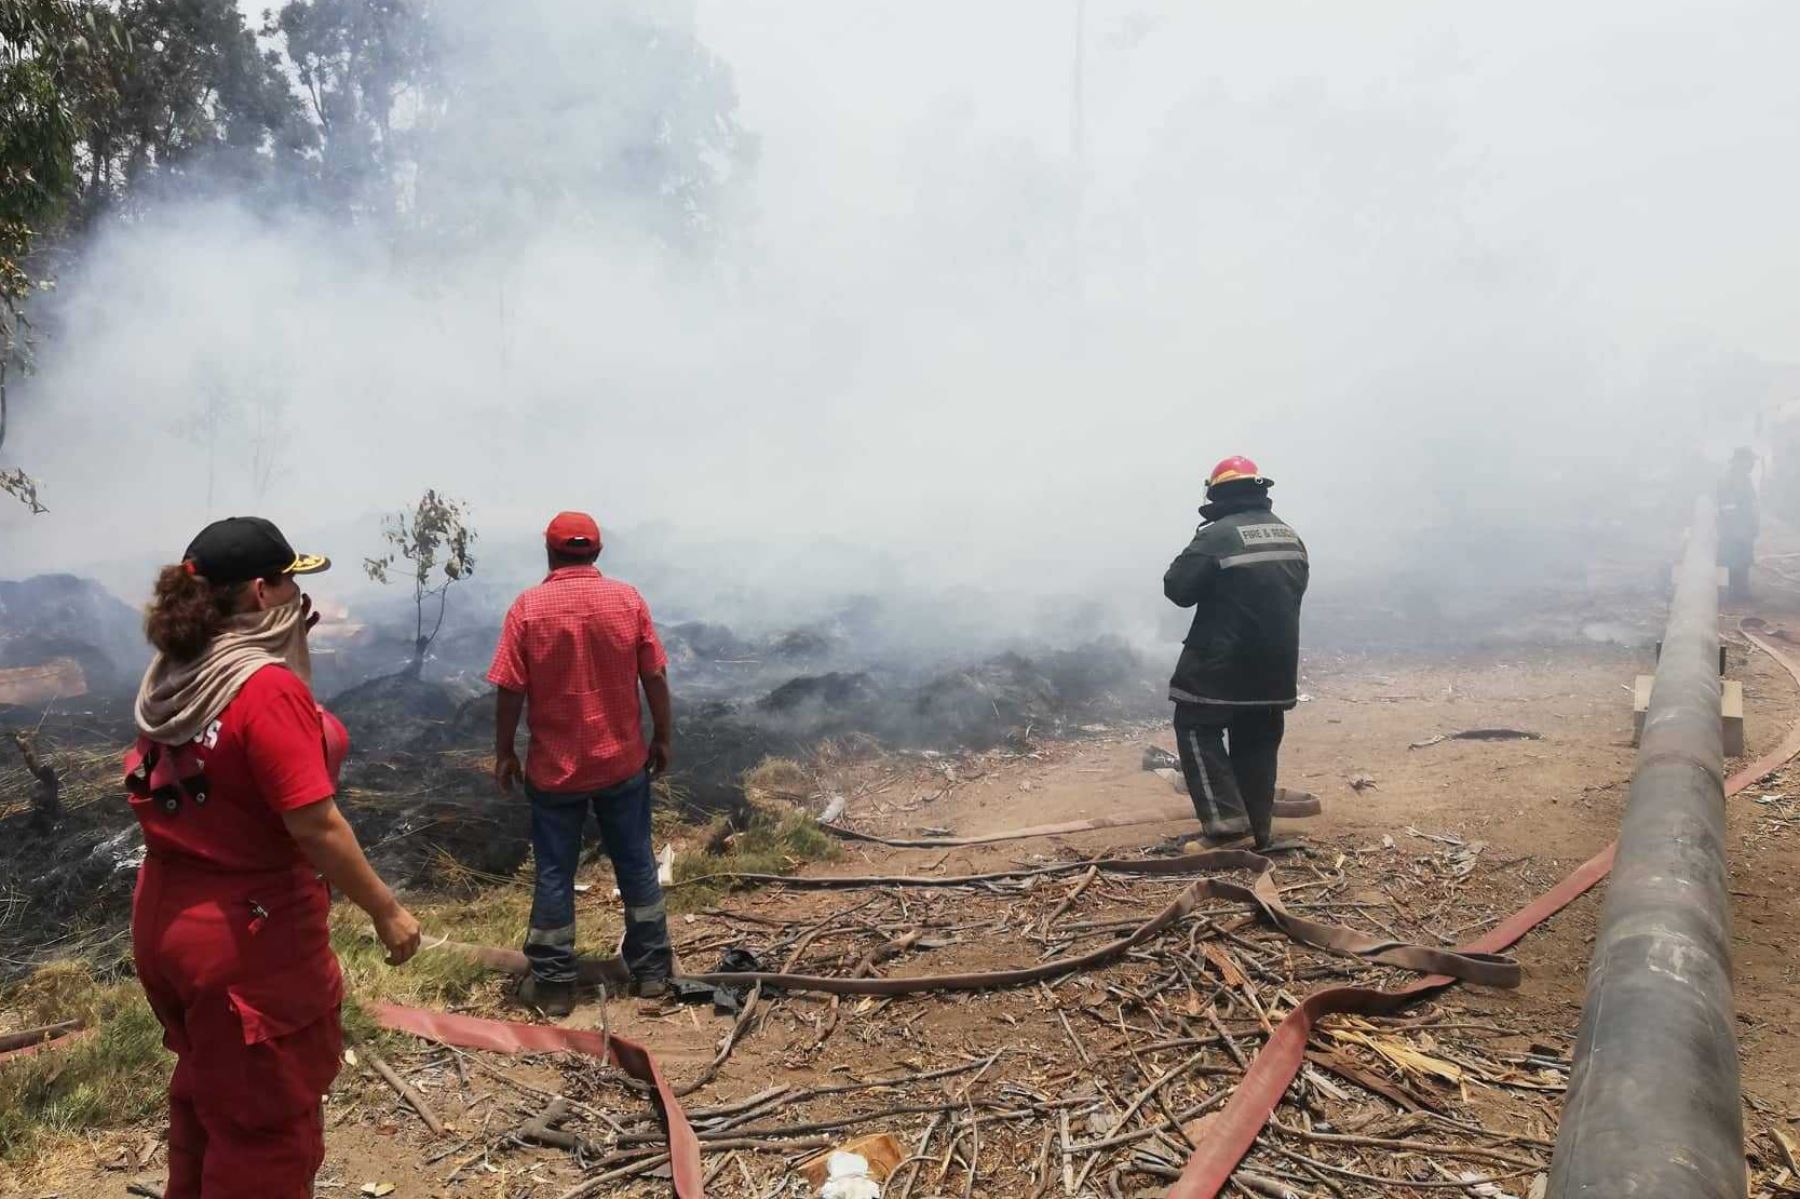 Esta mañana se reavivó el fuego en las áreas verdes del vivero forestal de Chimbote, luego que los Bomberos lucharan para tratar de controlarlo desde anoche.